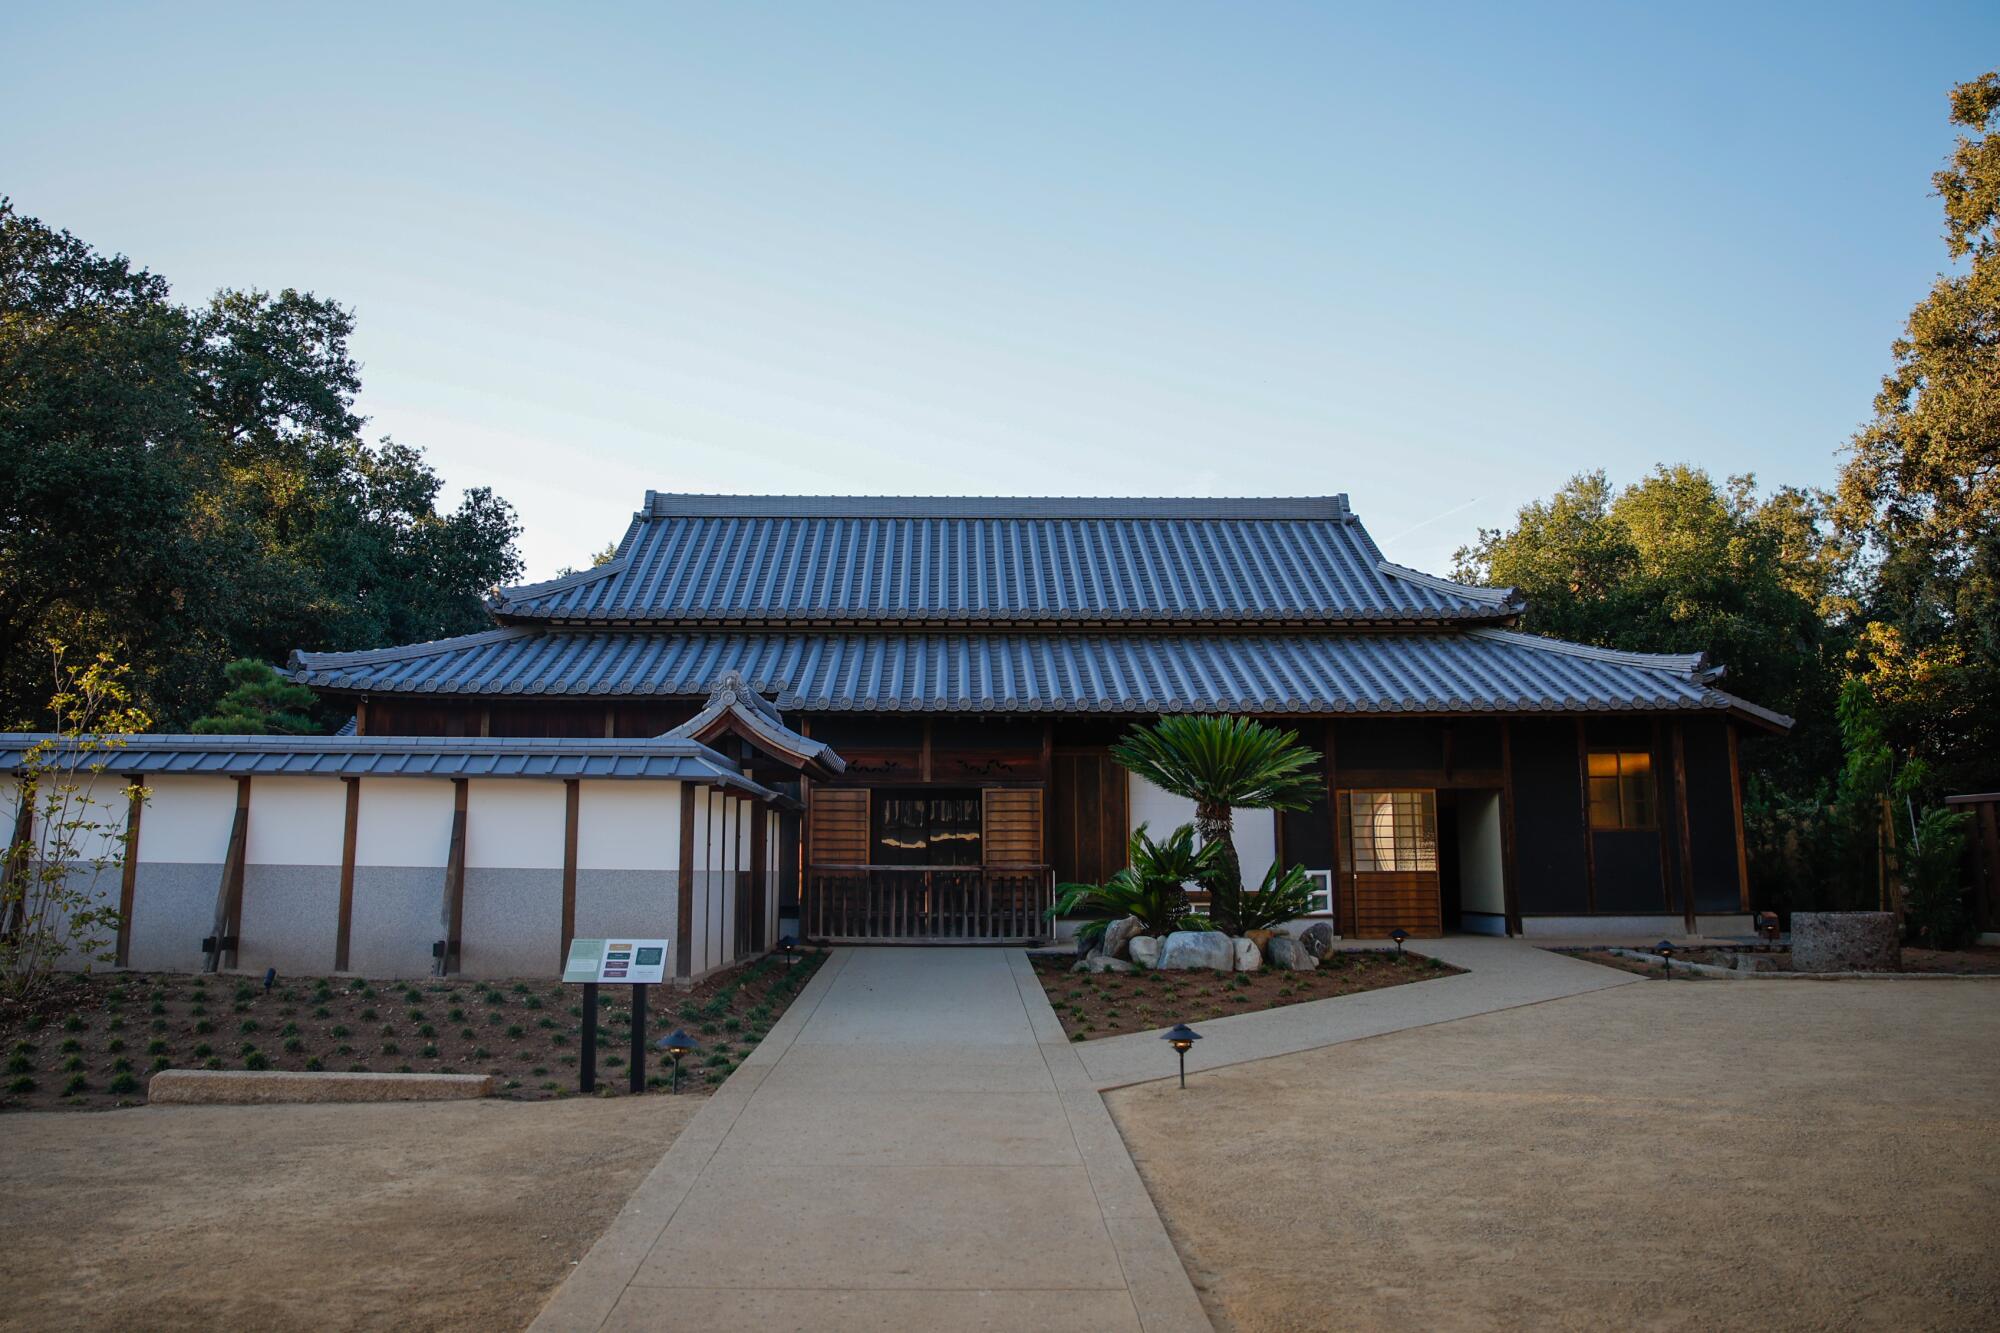 De hoofdingang voor boeren en ander gewone mensen bij het shōya-huis. De binnenplaats met schoongeveegd vuil was bedoeld voor dorpsevenementen.